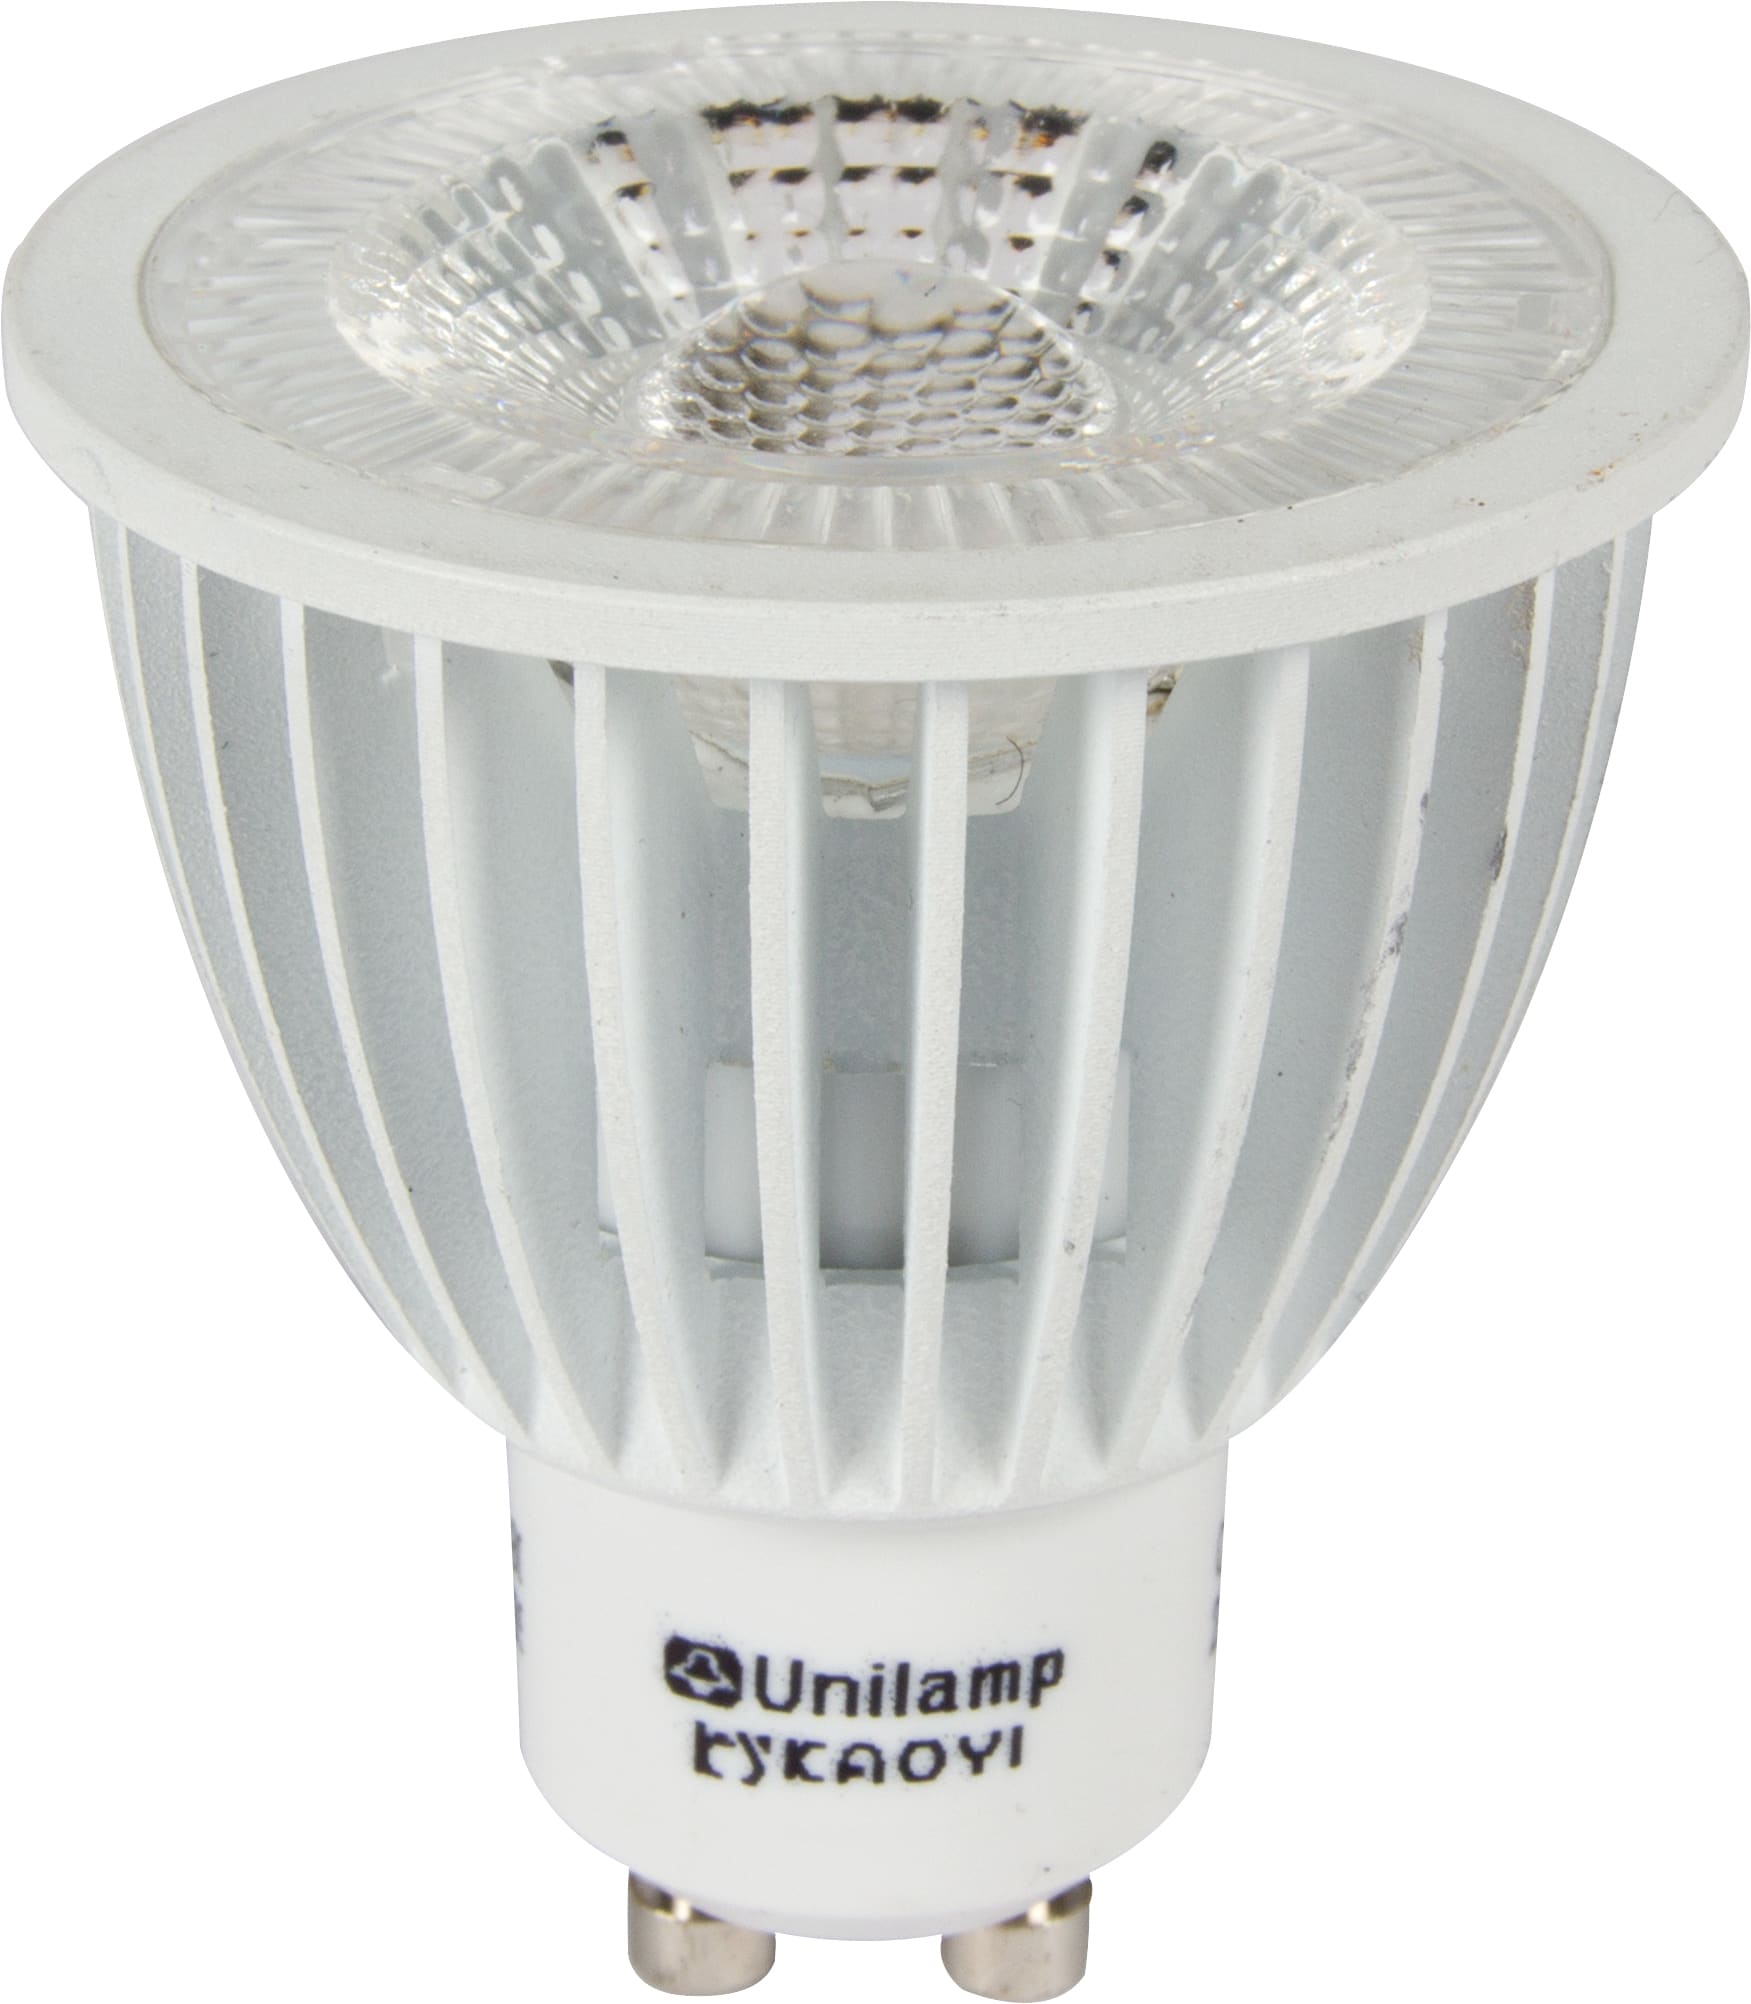 Unilamp - PrismaCob+ er en ny variant av vår eksisterende GU10/S-GU10 lyskilde.